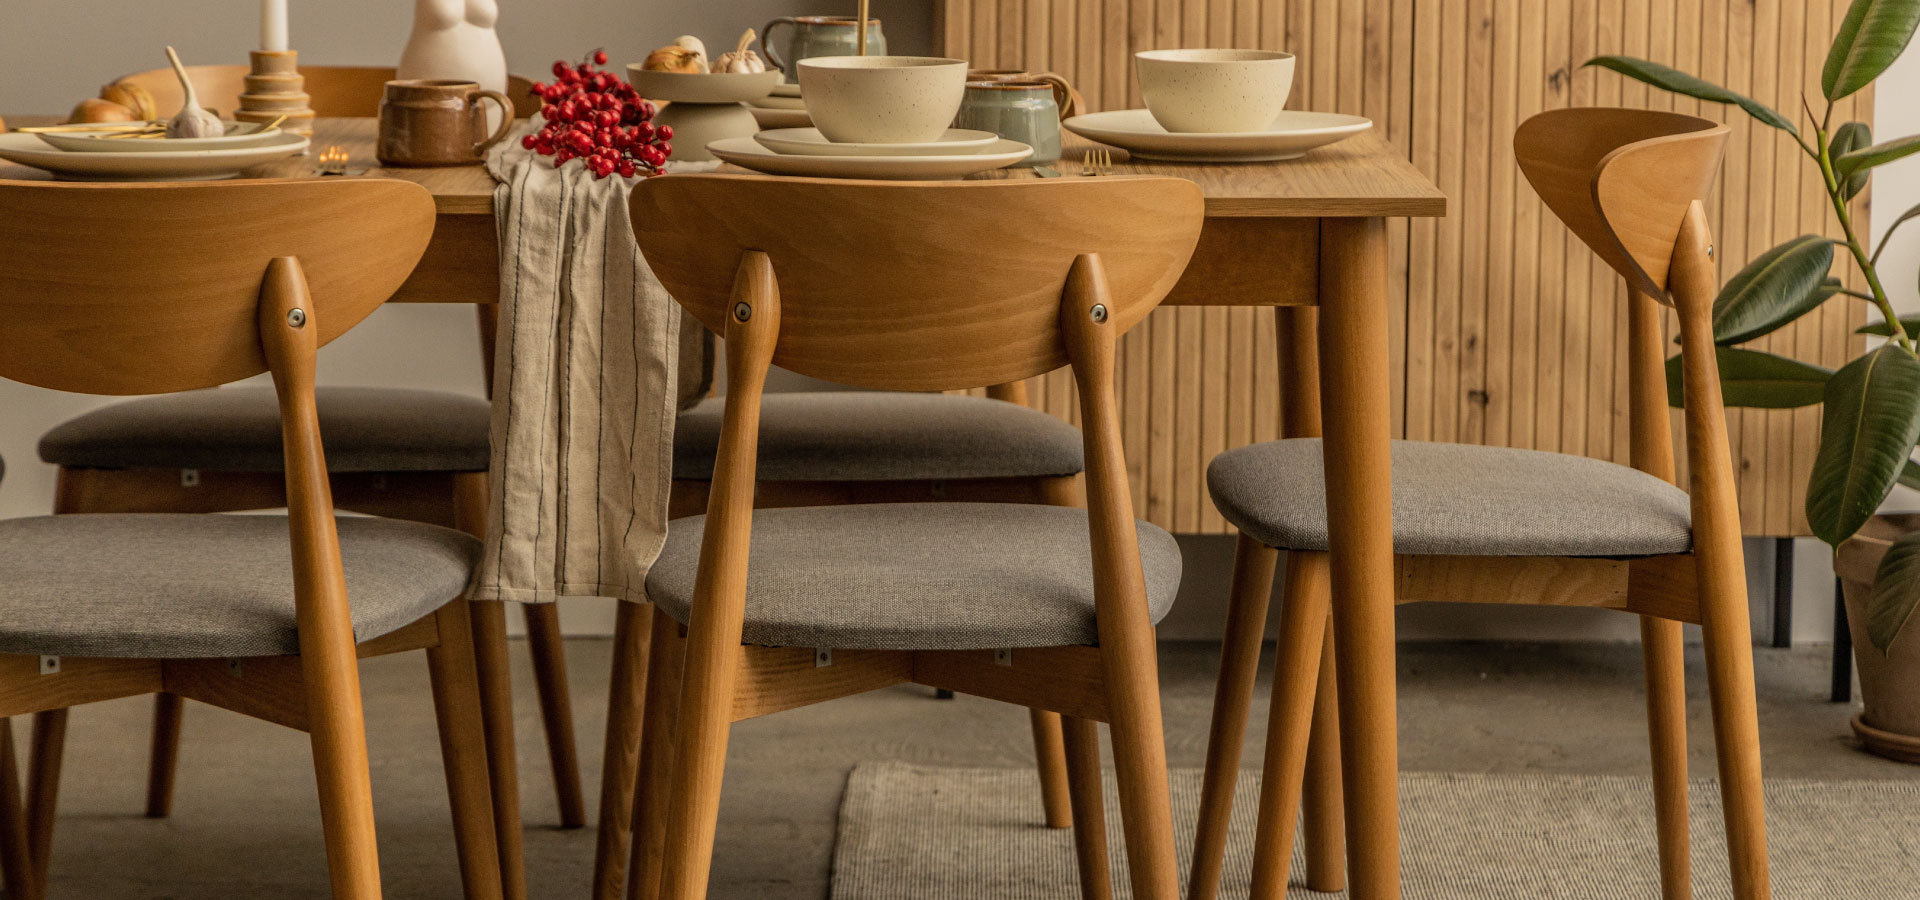 Drewniany stół z drewnianymi krzesłami o siwych siedziskach. Na stole zastawa w kolorze beżowym, w tle drewniana komoda oraz roślina.